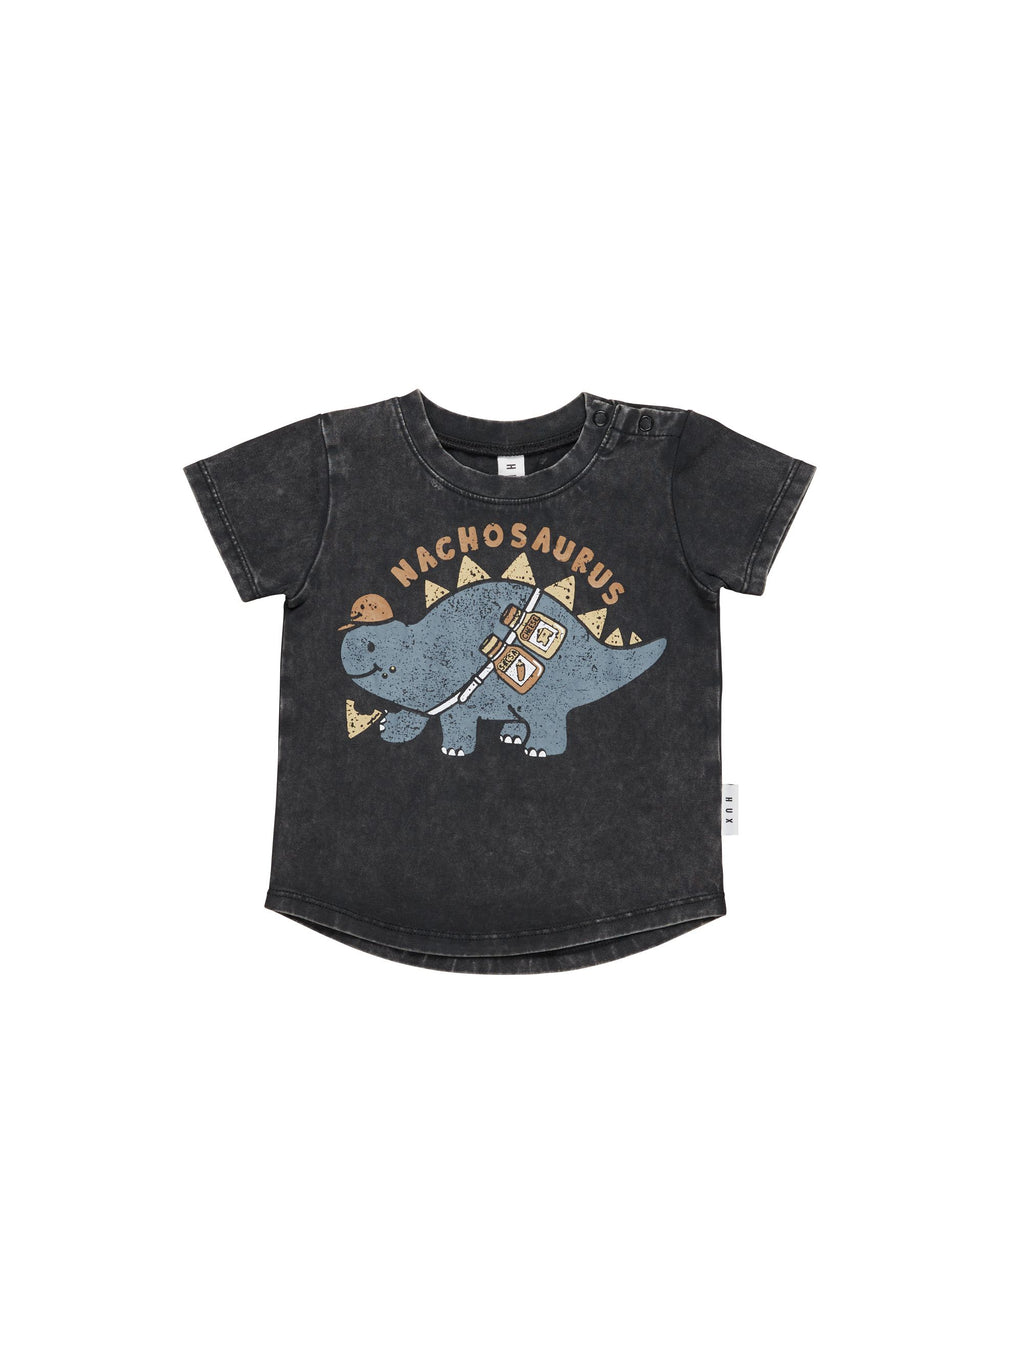 Huxbaby T-Shirt - Nachosaurus